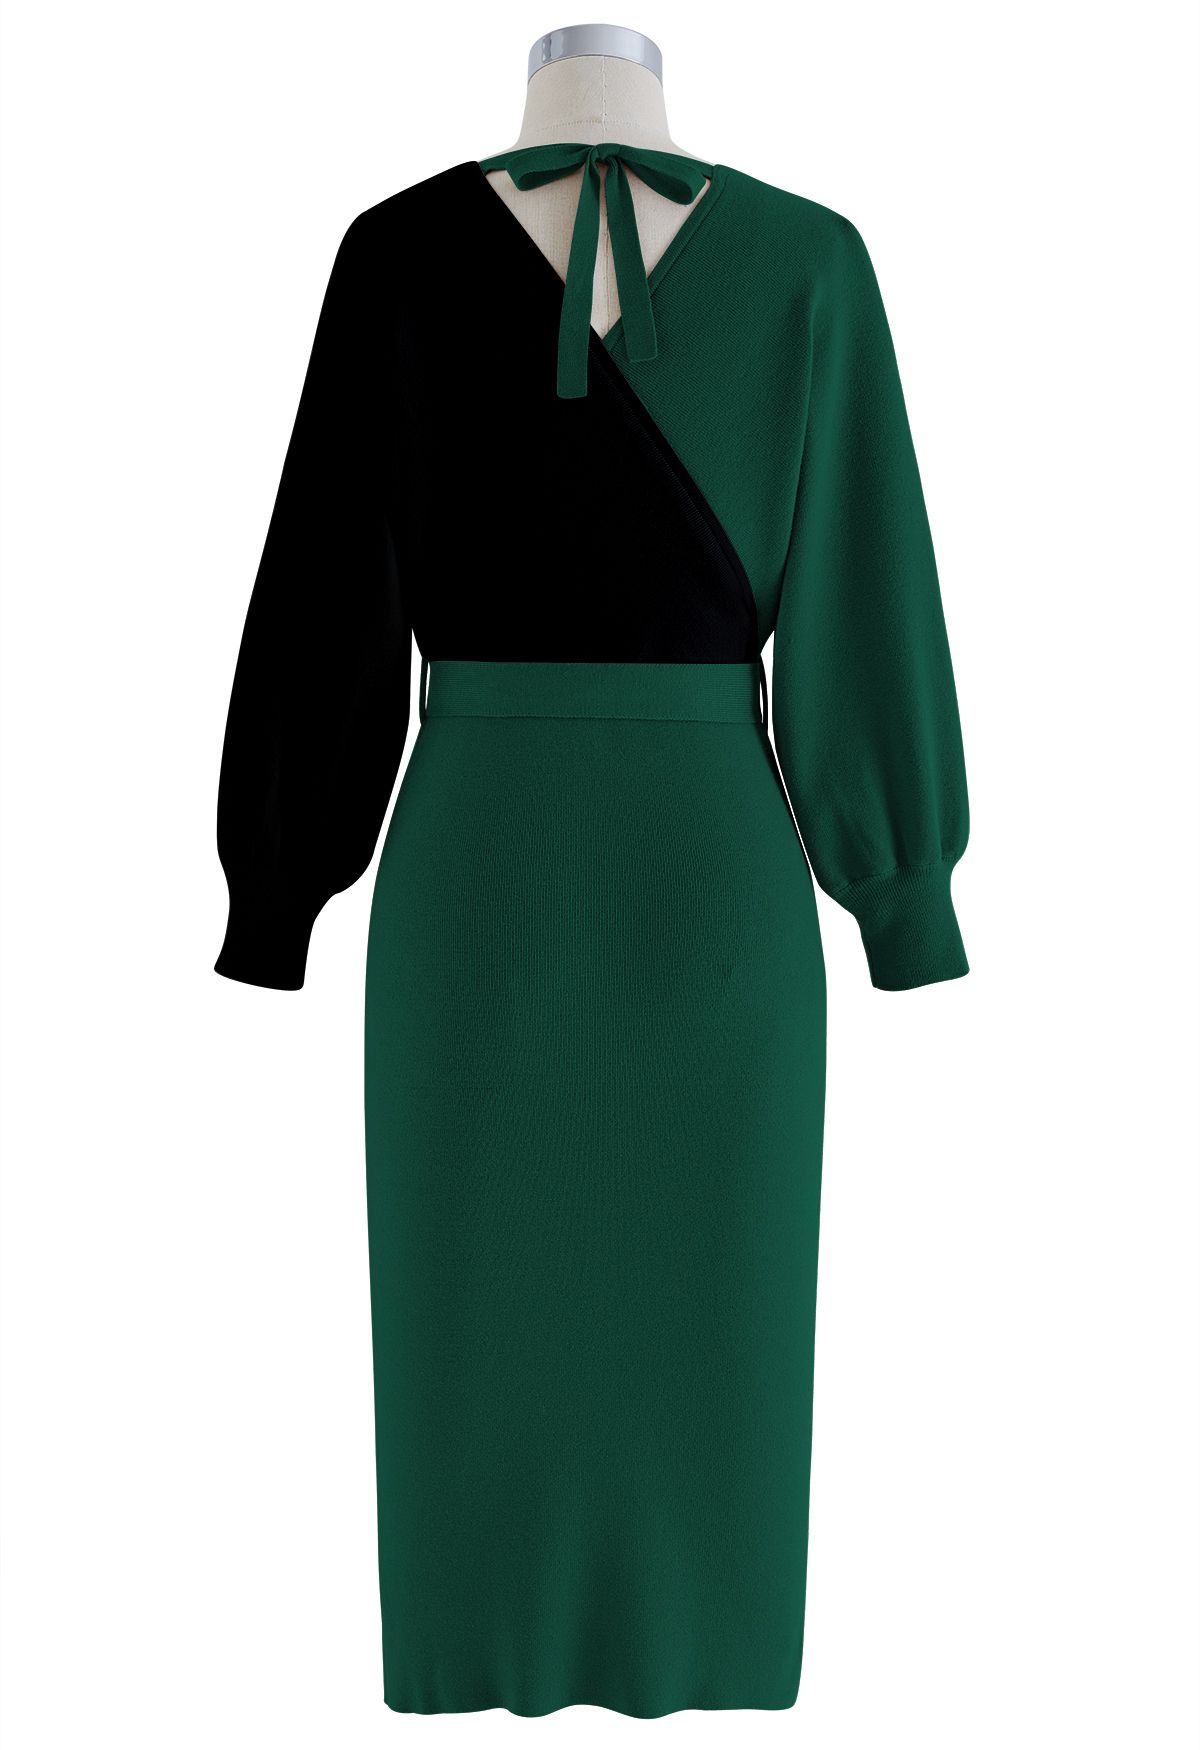 Tie Bow Two-Tone Knit Wrap Midi Dress in Dark Green